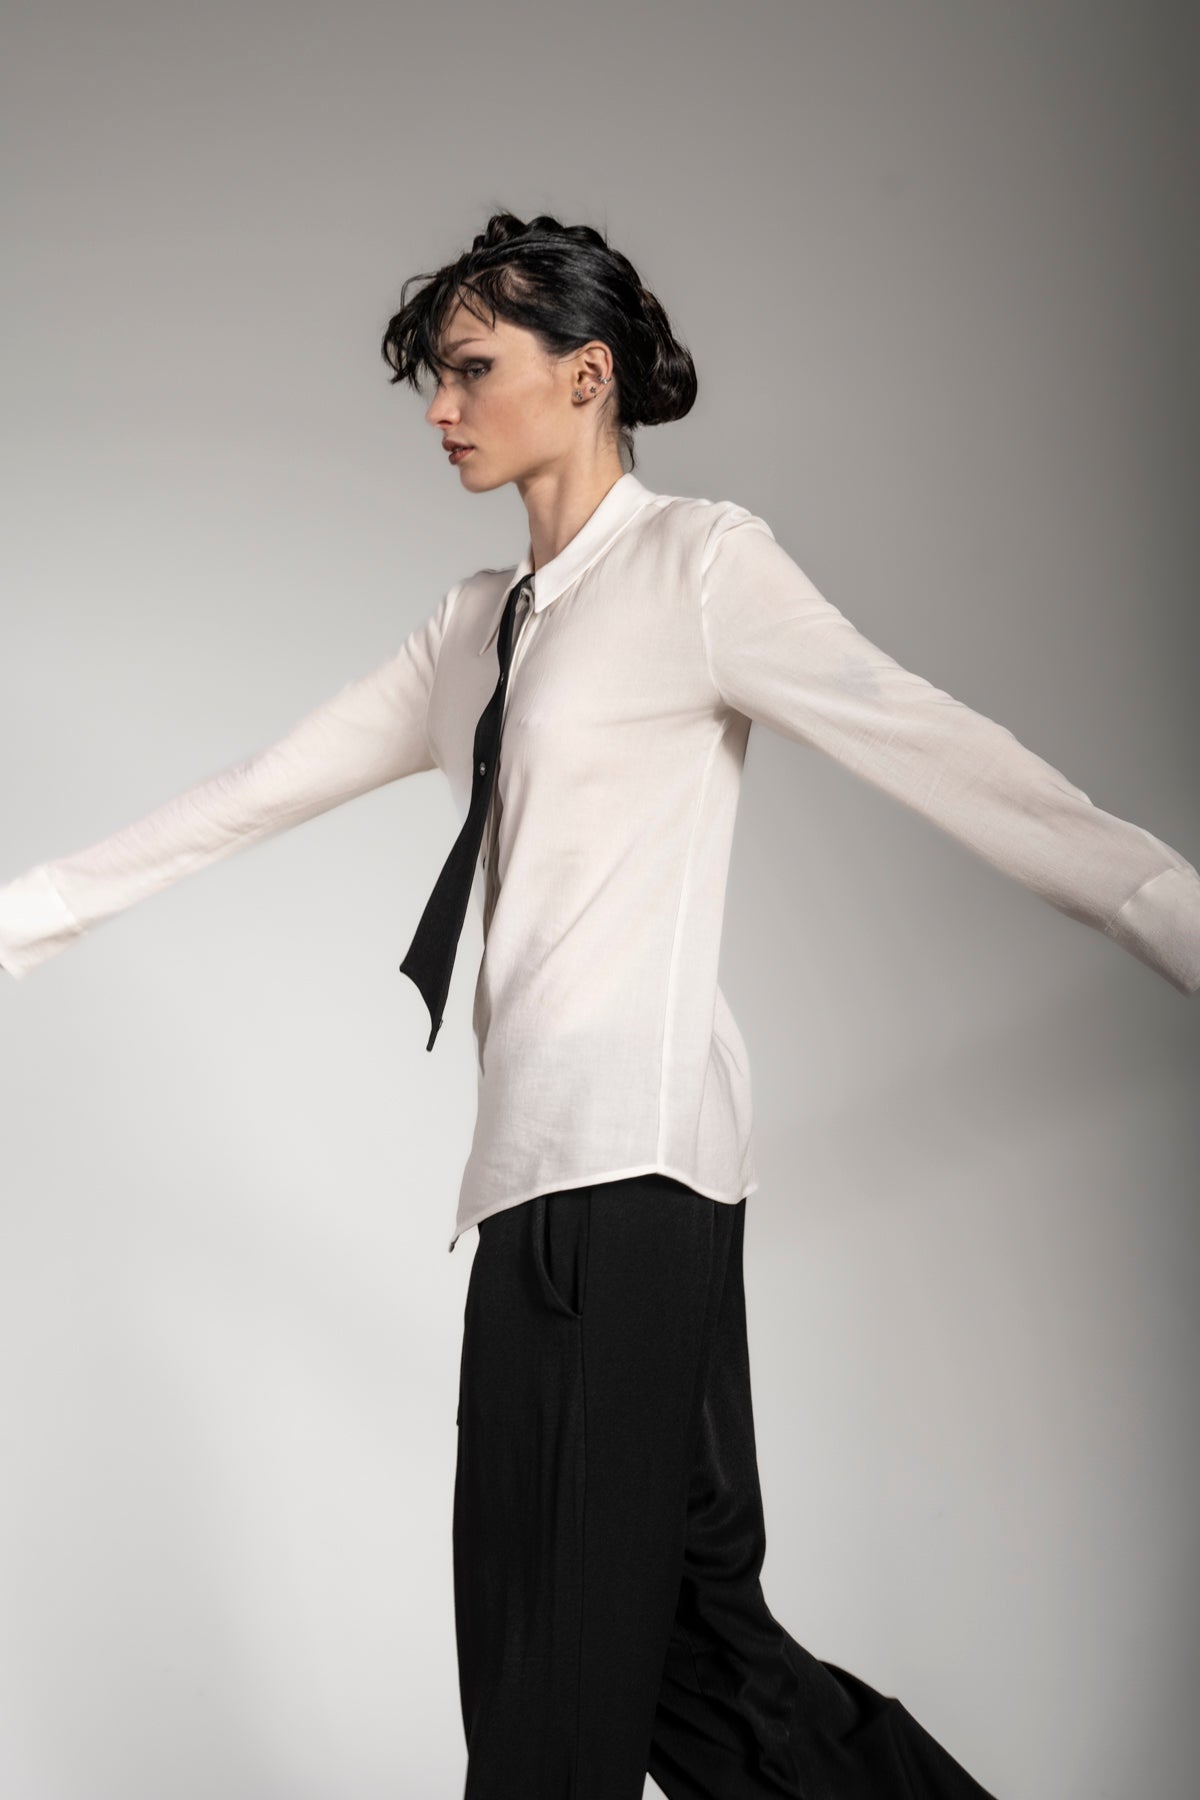 eigensinnig wien | Grace | Asymmetrische Bluse mit Krawatte für Frauen in Weiß